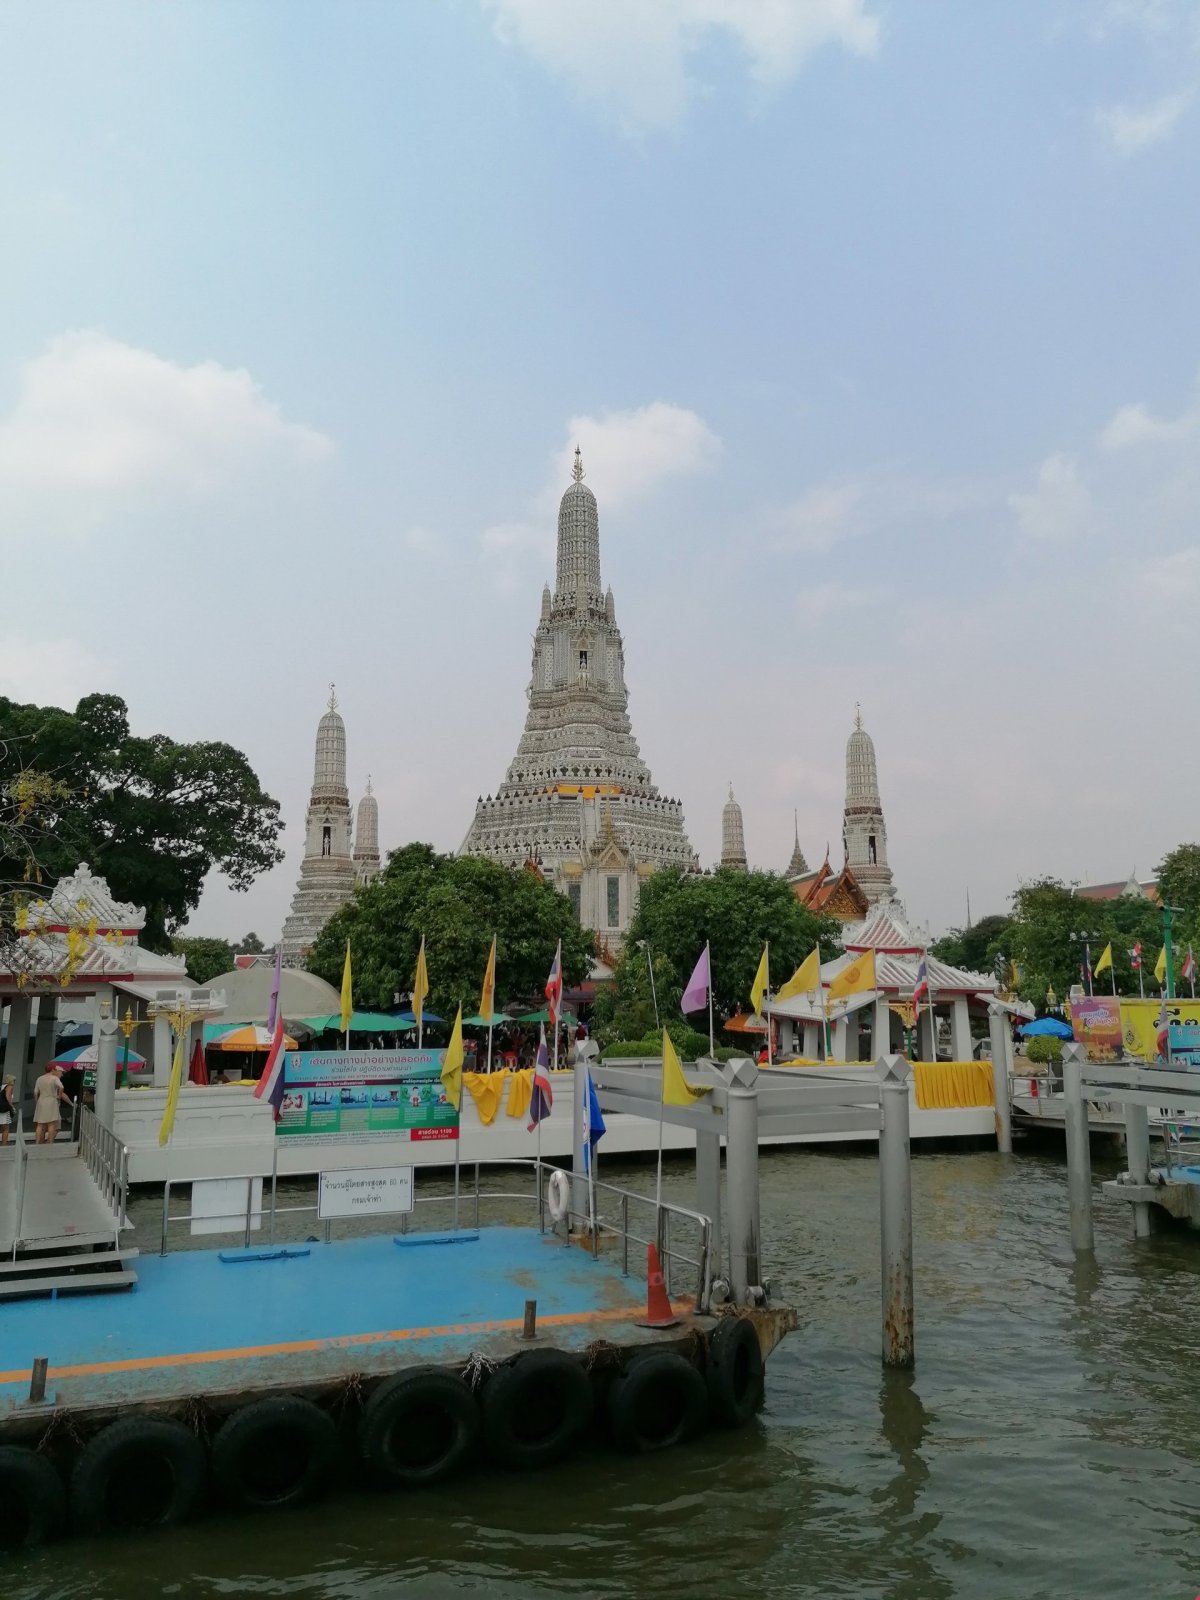 Chrám Wat Arun